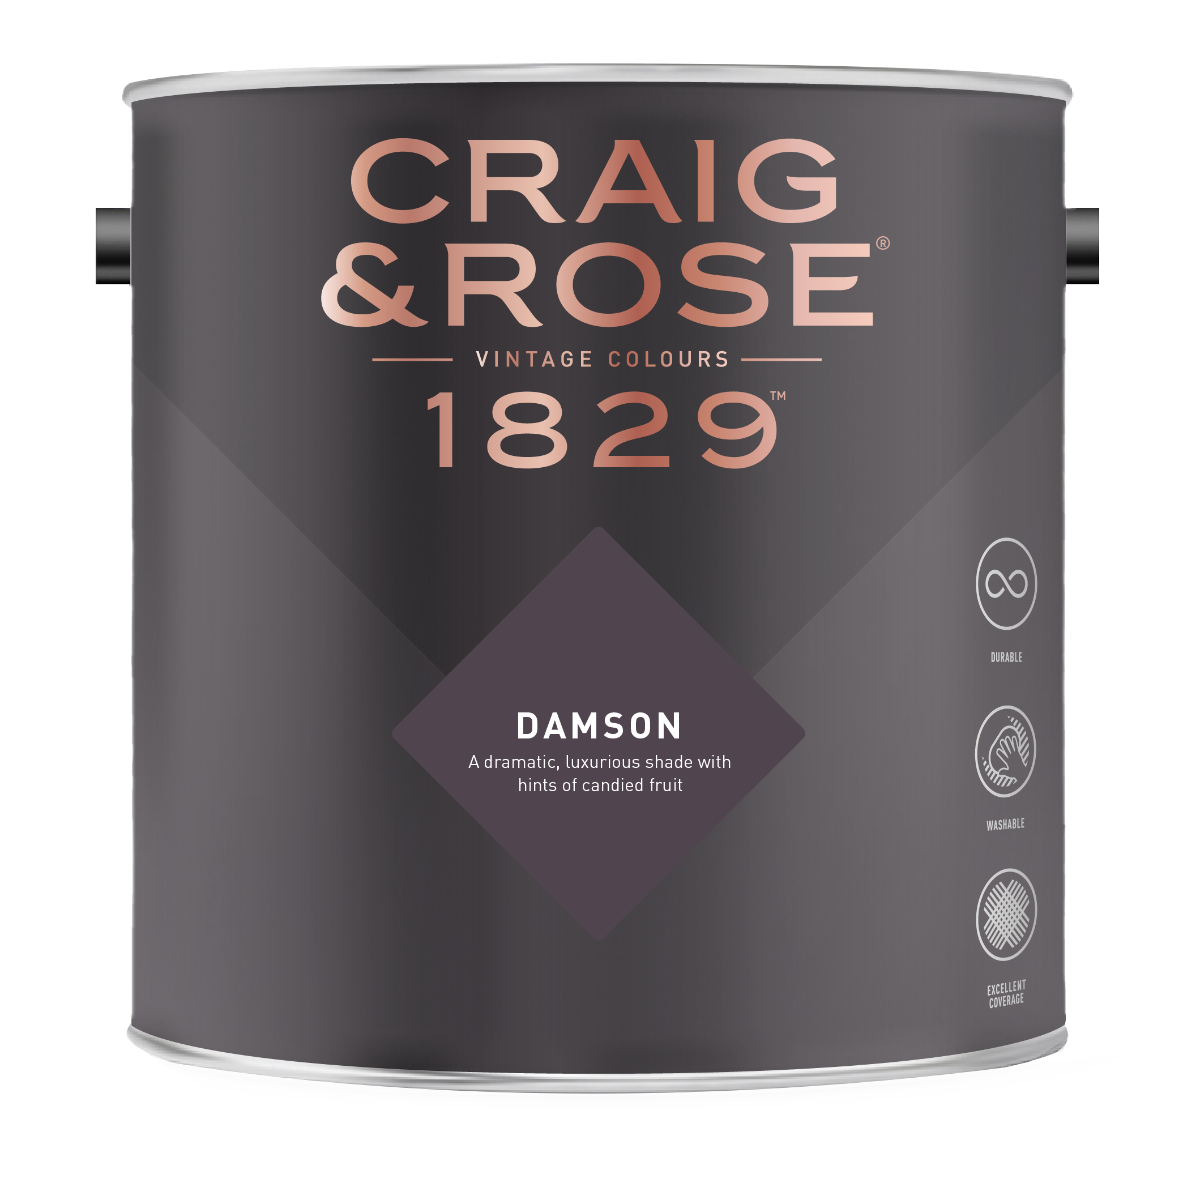 Craig & Rose 1829 Damson